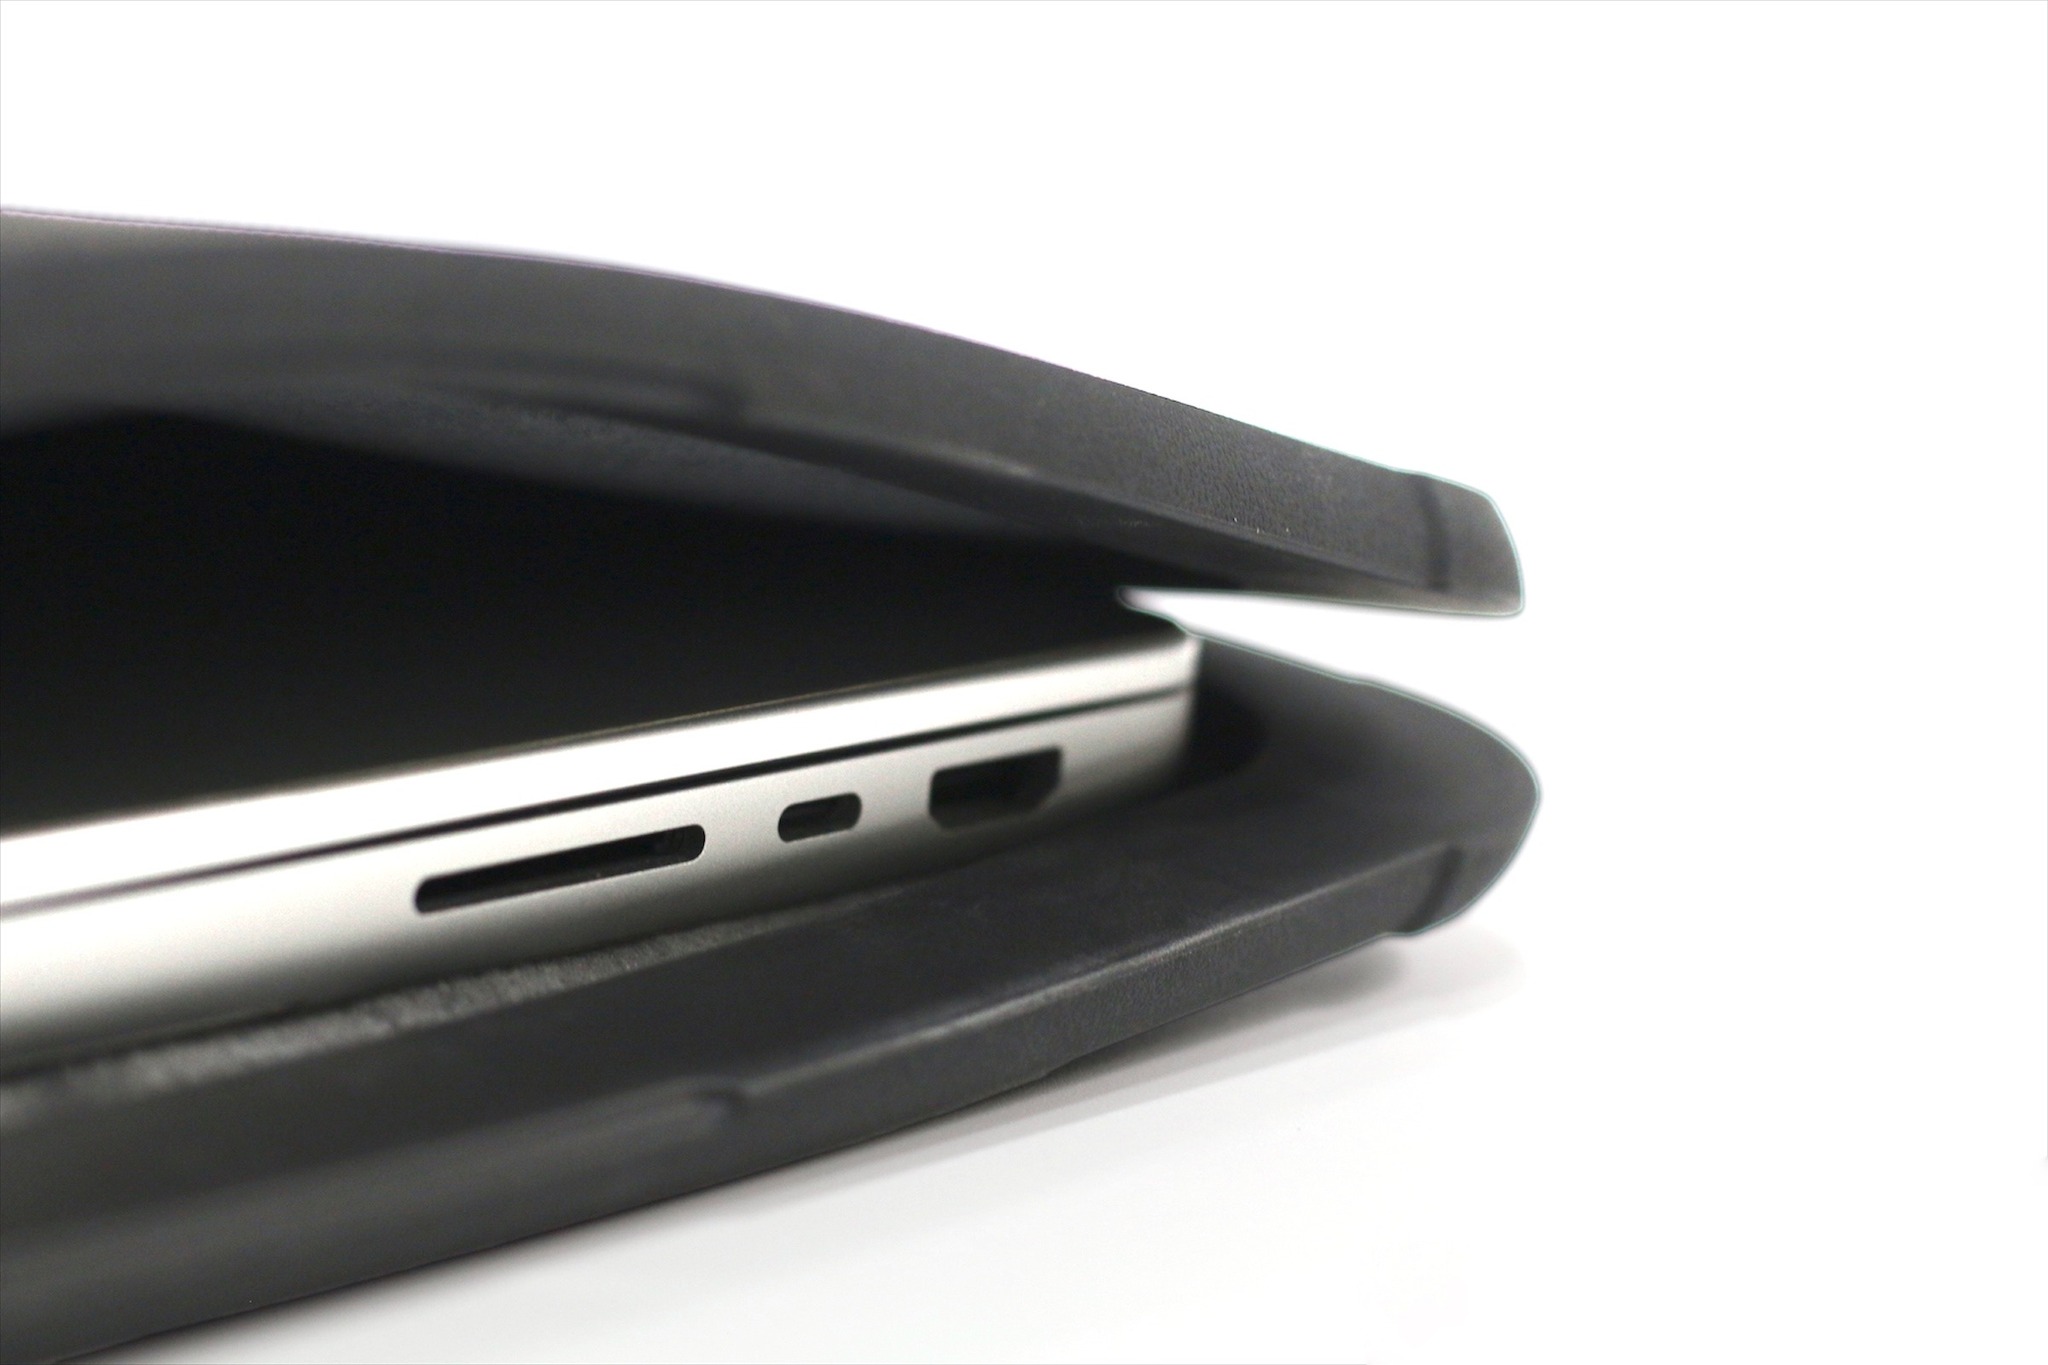 WIWU Defender Stand Case - Mẫu túi chống shock Macbook tích hợp giá đỡ